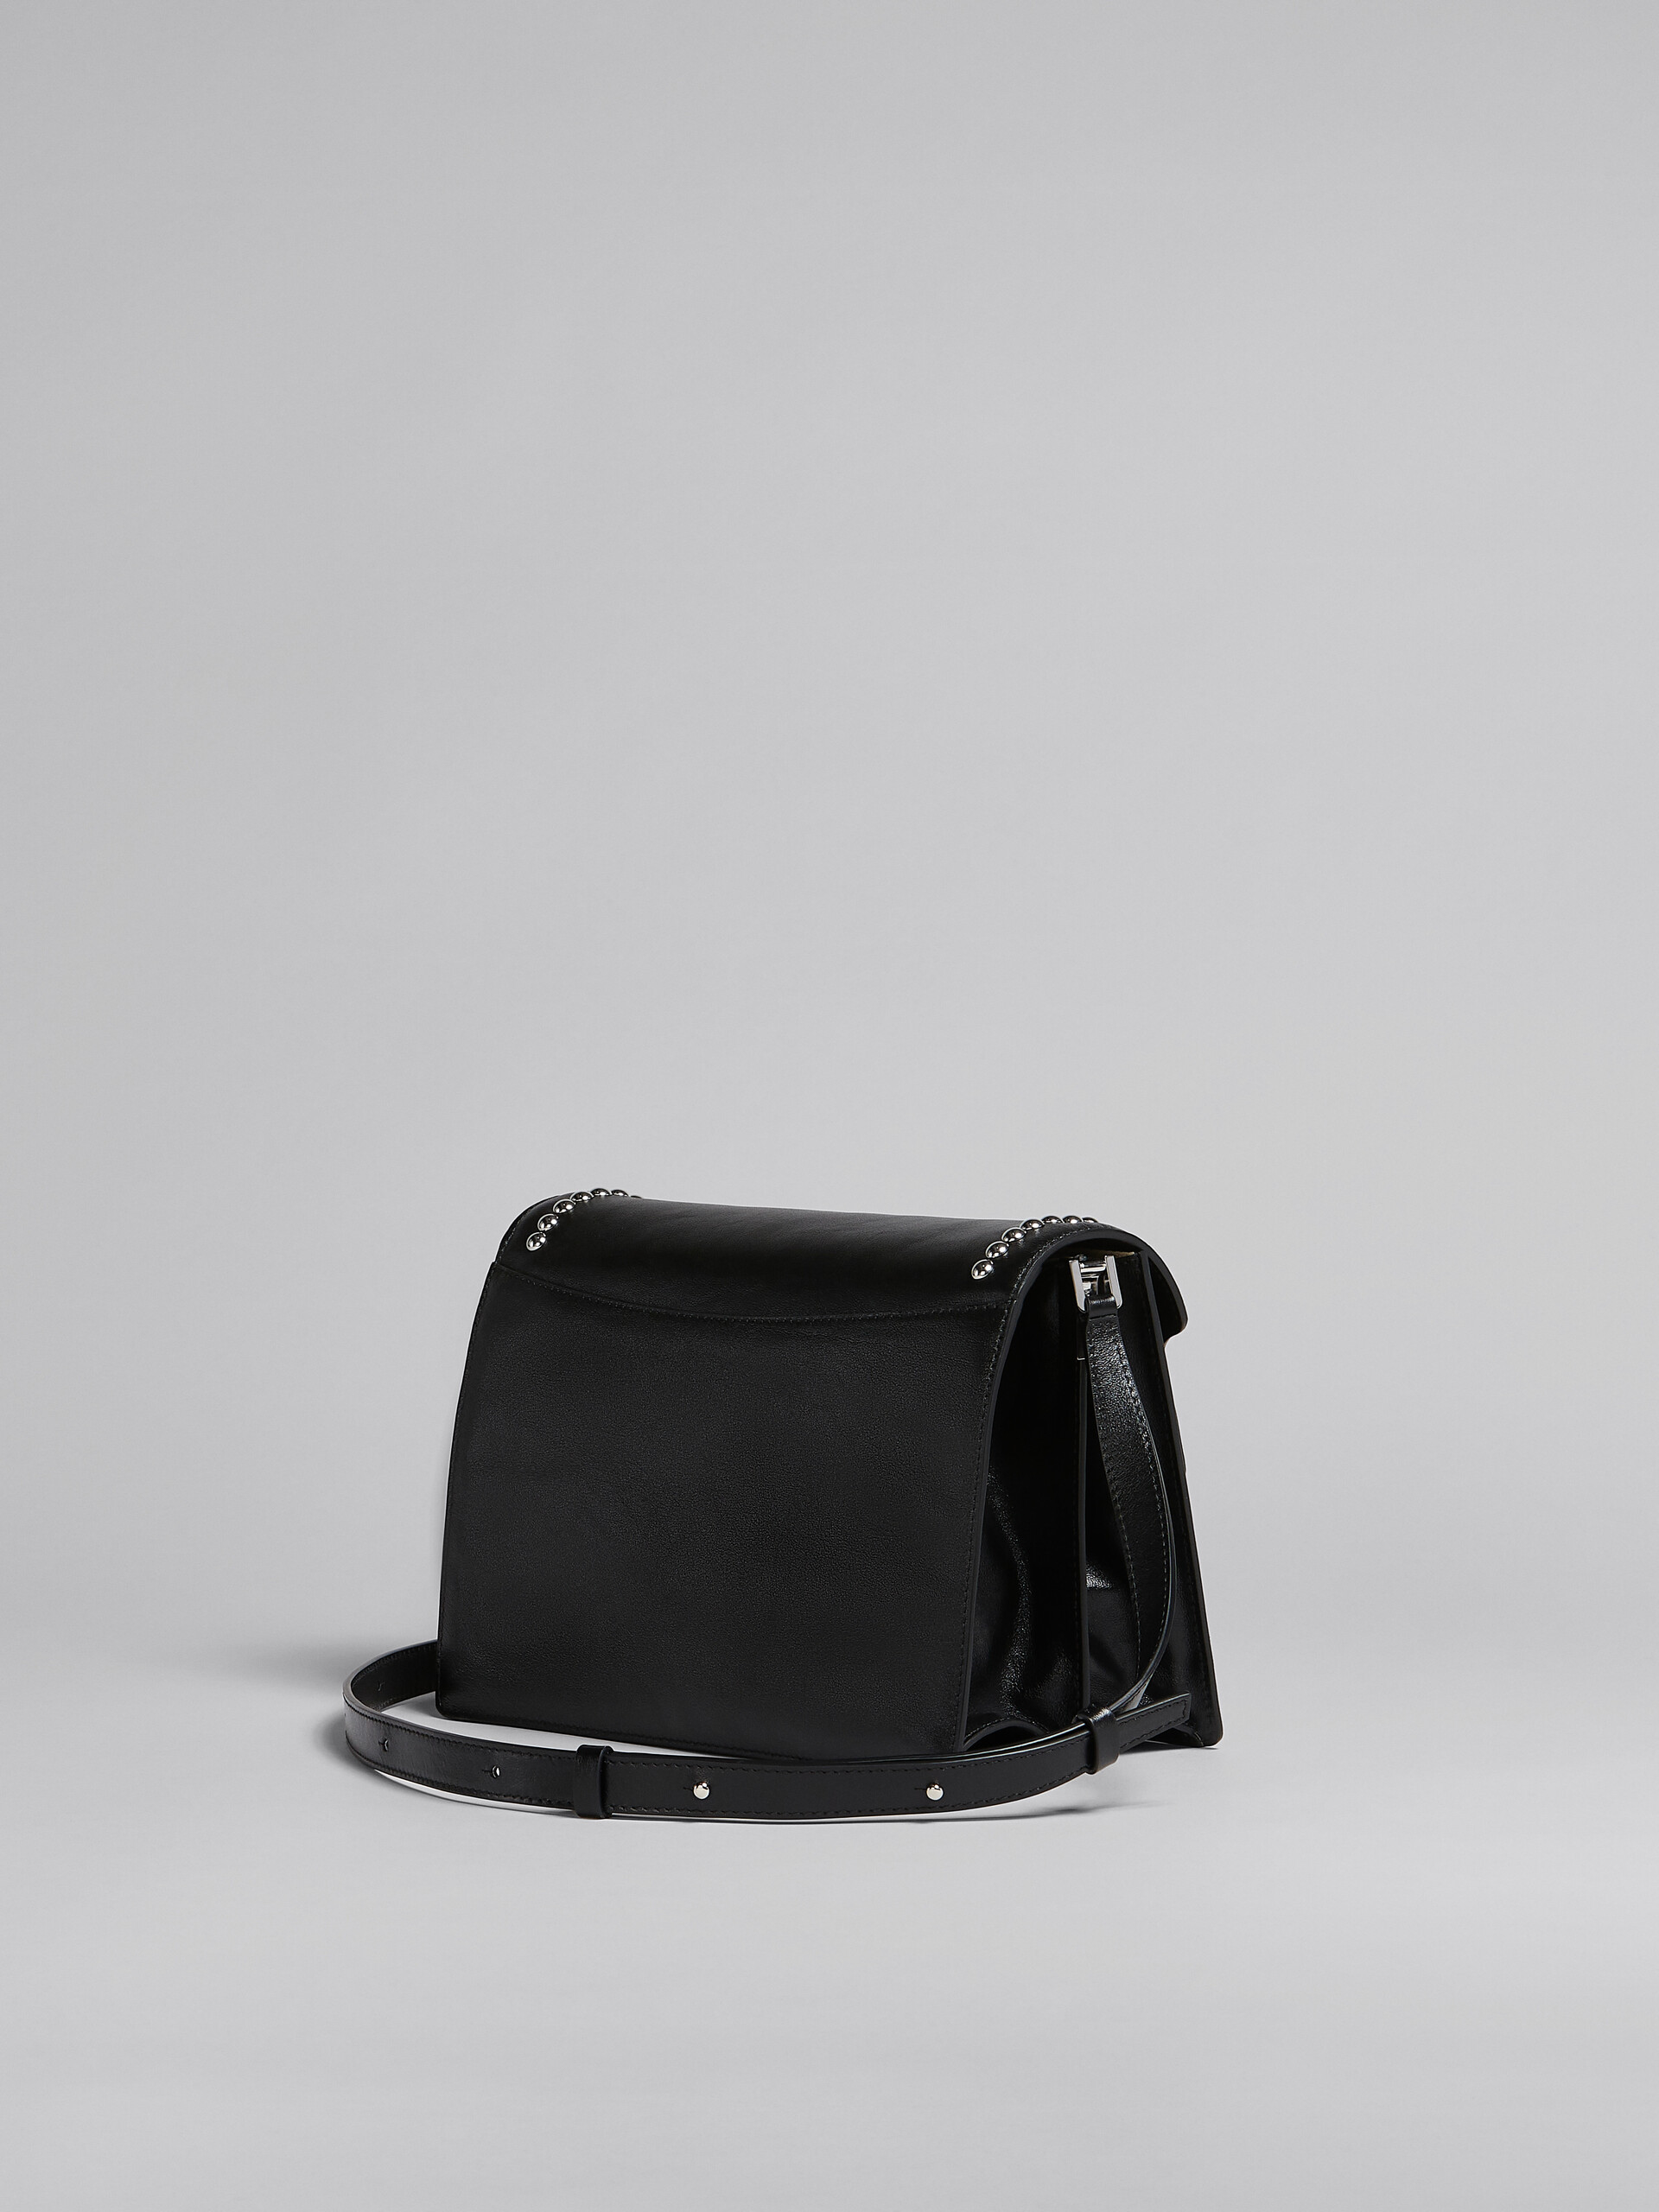 Trunk Soft Large Bag in black leather with studs - Shoulder Bag - Image 3